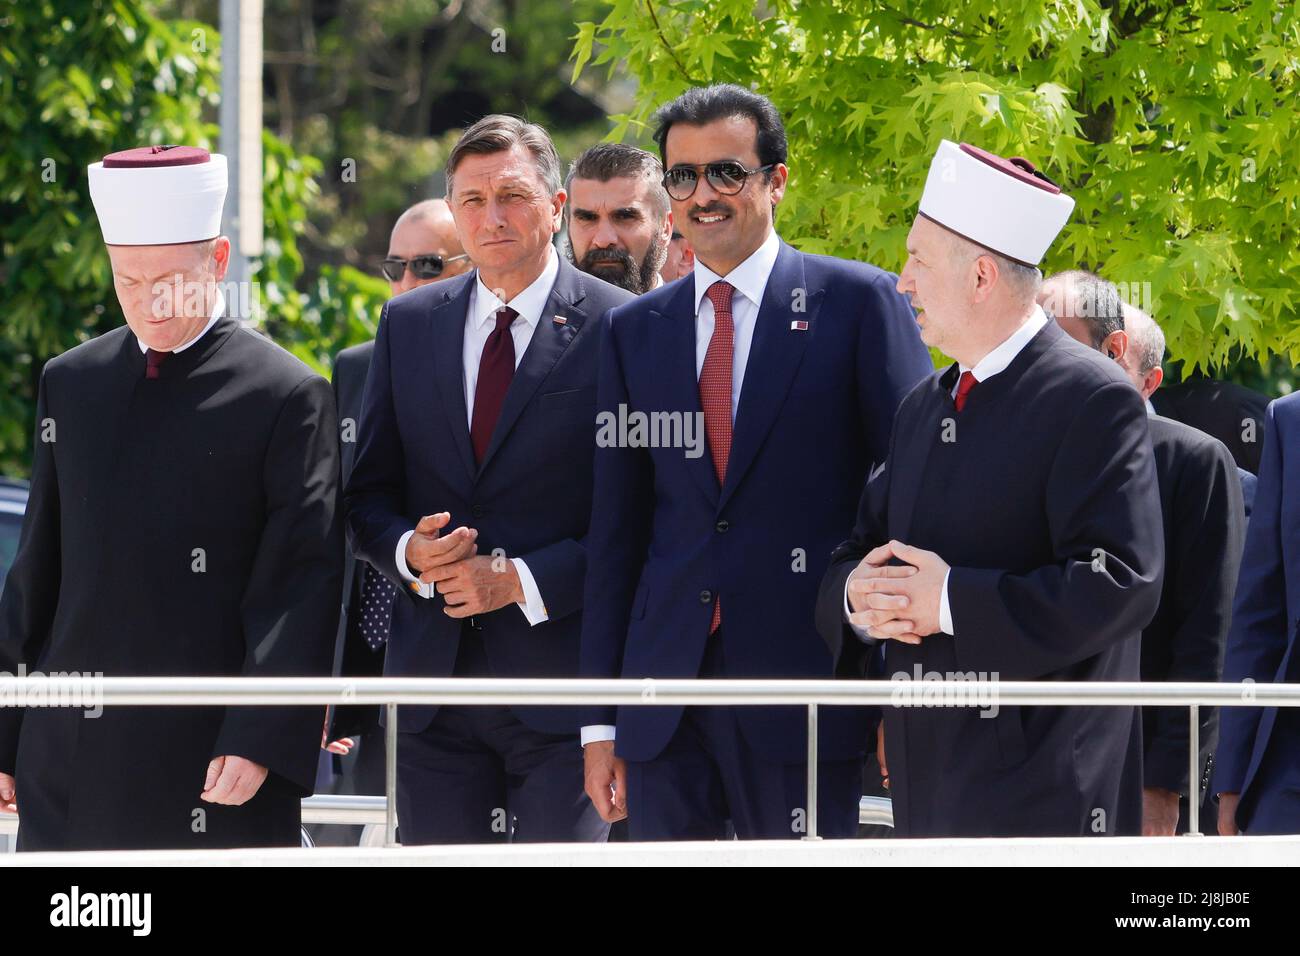 (Da sinistra a destra) Mufti della Comunità islamica in Slovenia Nevzet Poric, il presidente sloveno Borut Pahor, l'emiro del Qatar Tamim bin Hamad bin Khalifa al Thani, e l'ex Mufti della Comunità islamica in Slovenia Nedzad Grabus arrivano al Centro religioso e culturale islamico di Lubiana. L'emiro del Qatar Tamim bin Hamad bin Khalifa al Thani è stato in visita di due giorni in Slovenia per rafforzare i legami economici e confermare gli accordi di fornitura di gas effettuati a marzo, poiché la Slovenia intende diversificare la sua fornitura di gas naturale. (Foto di Luka Dakskobler/SOPA Images/Sipa USA) Foto Stock